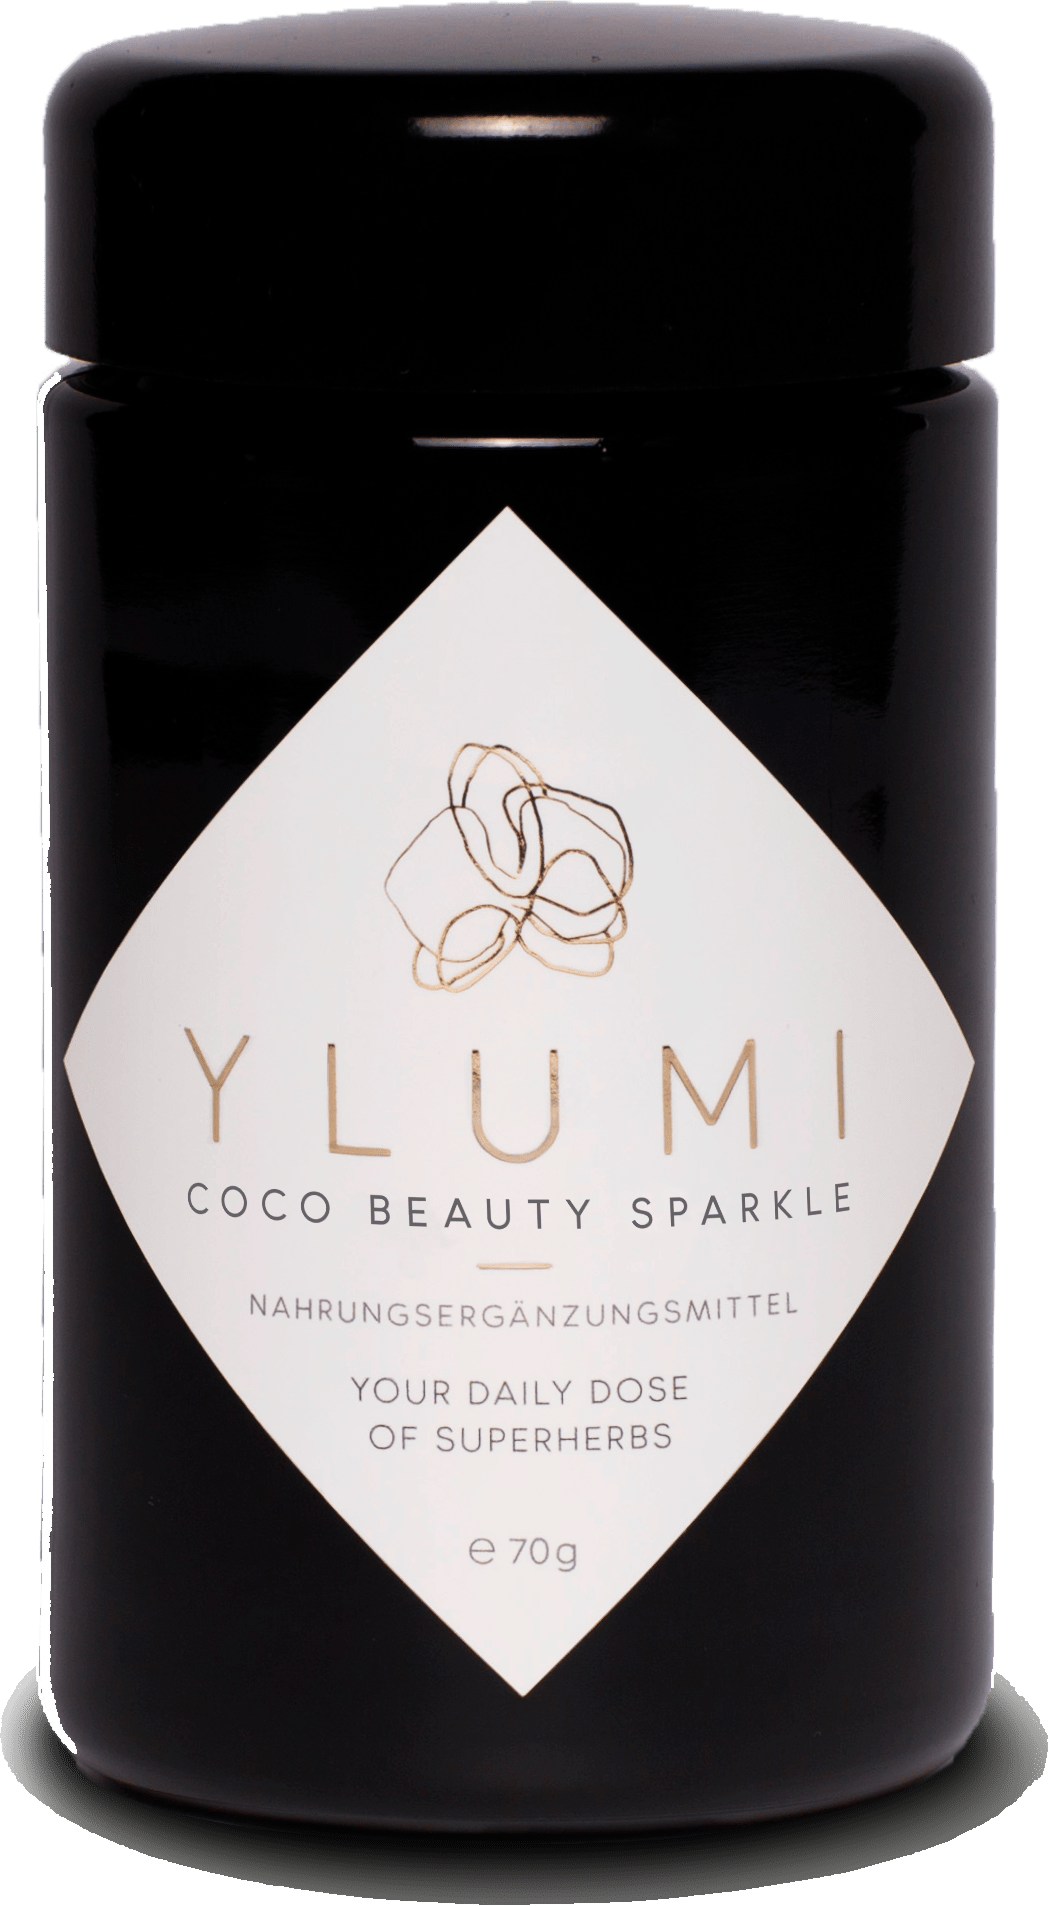 Ylumi Coco Beauty Sparkle